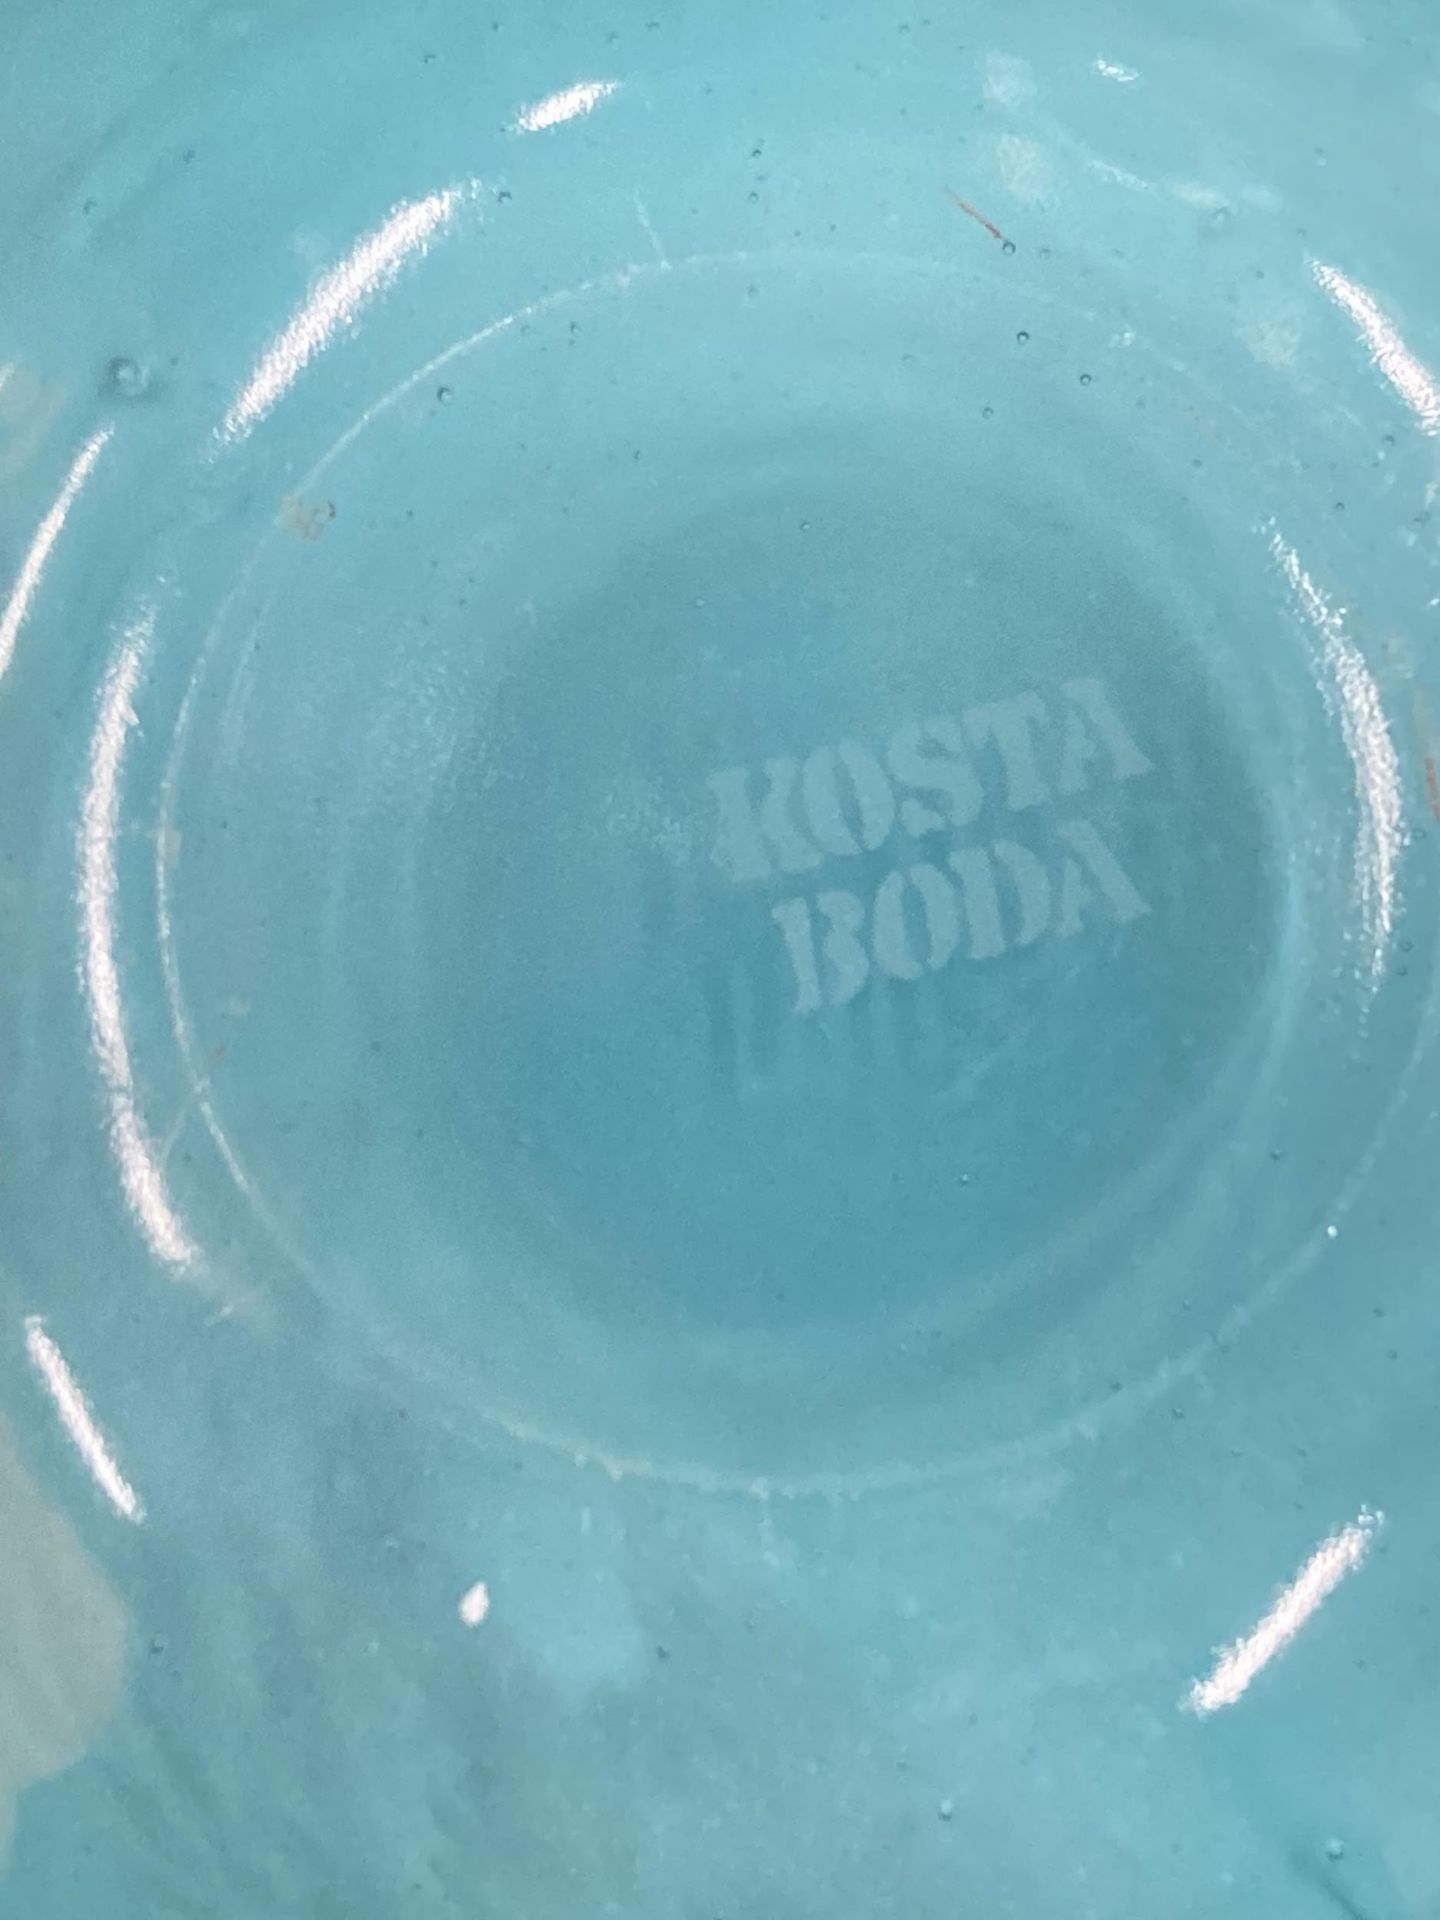 A KOSTA BODA HEAVY BLUE SWIRL GLASS BOWL - Image 4 of 4